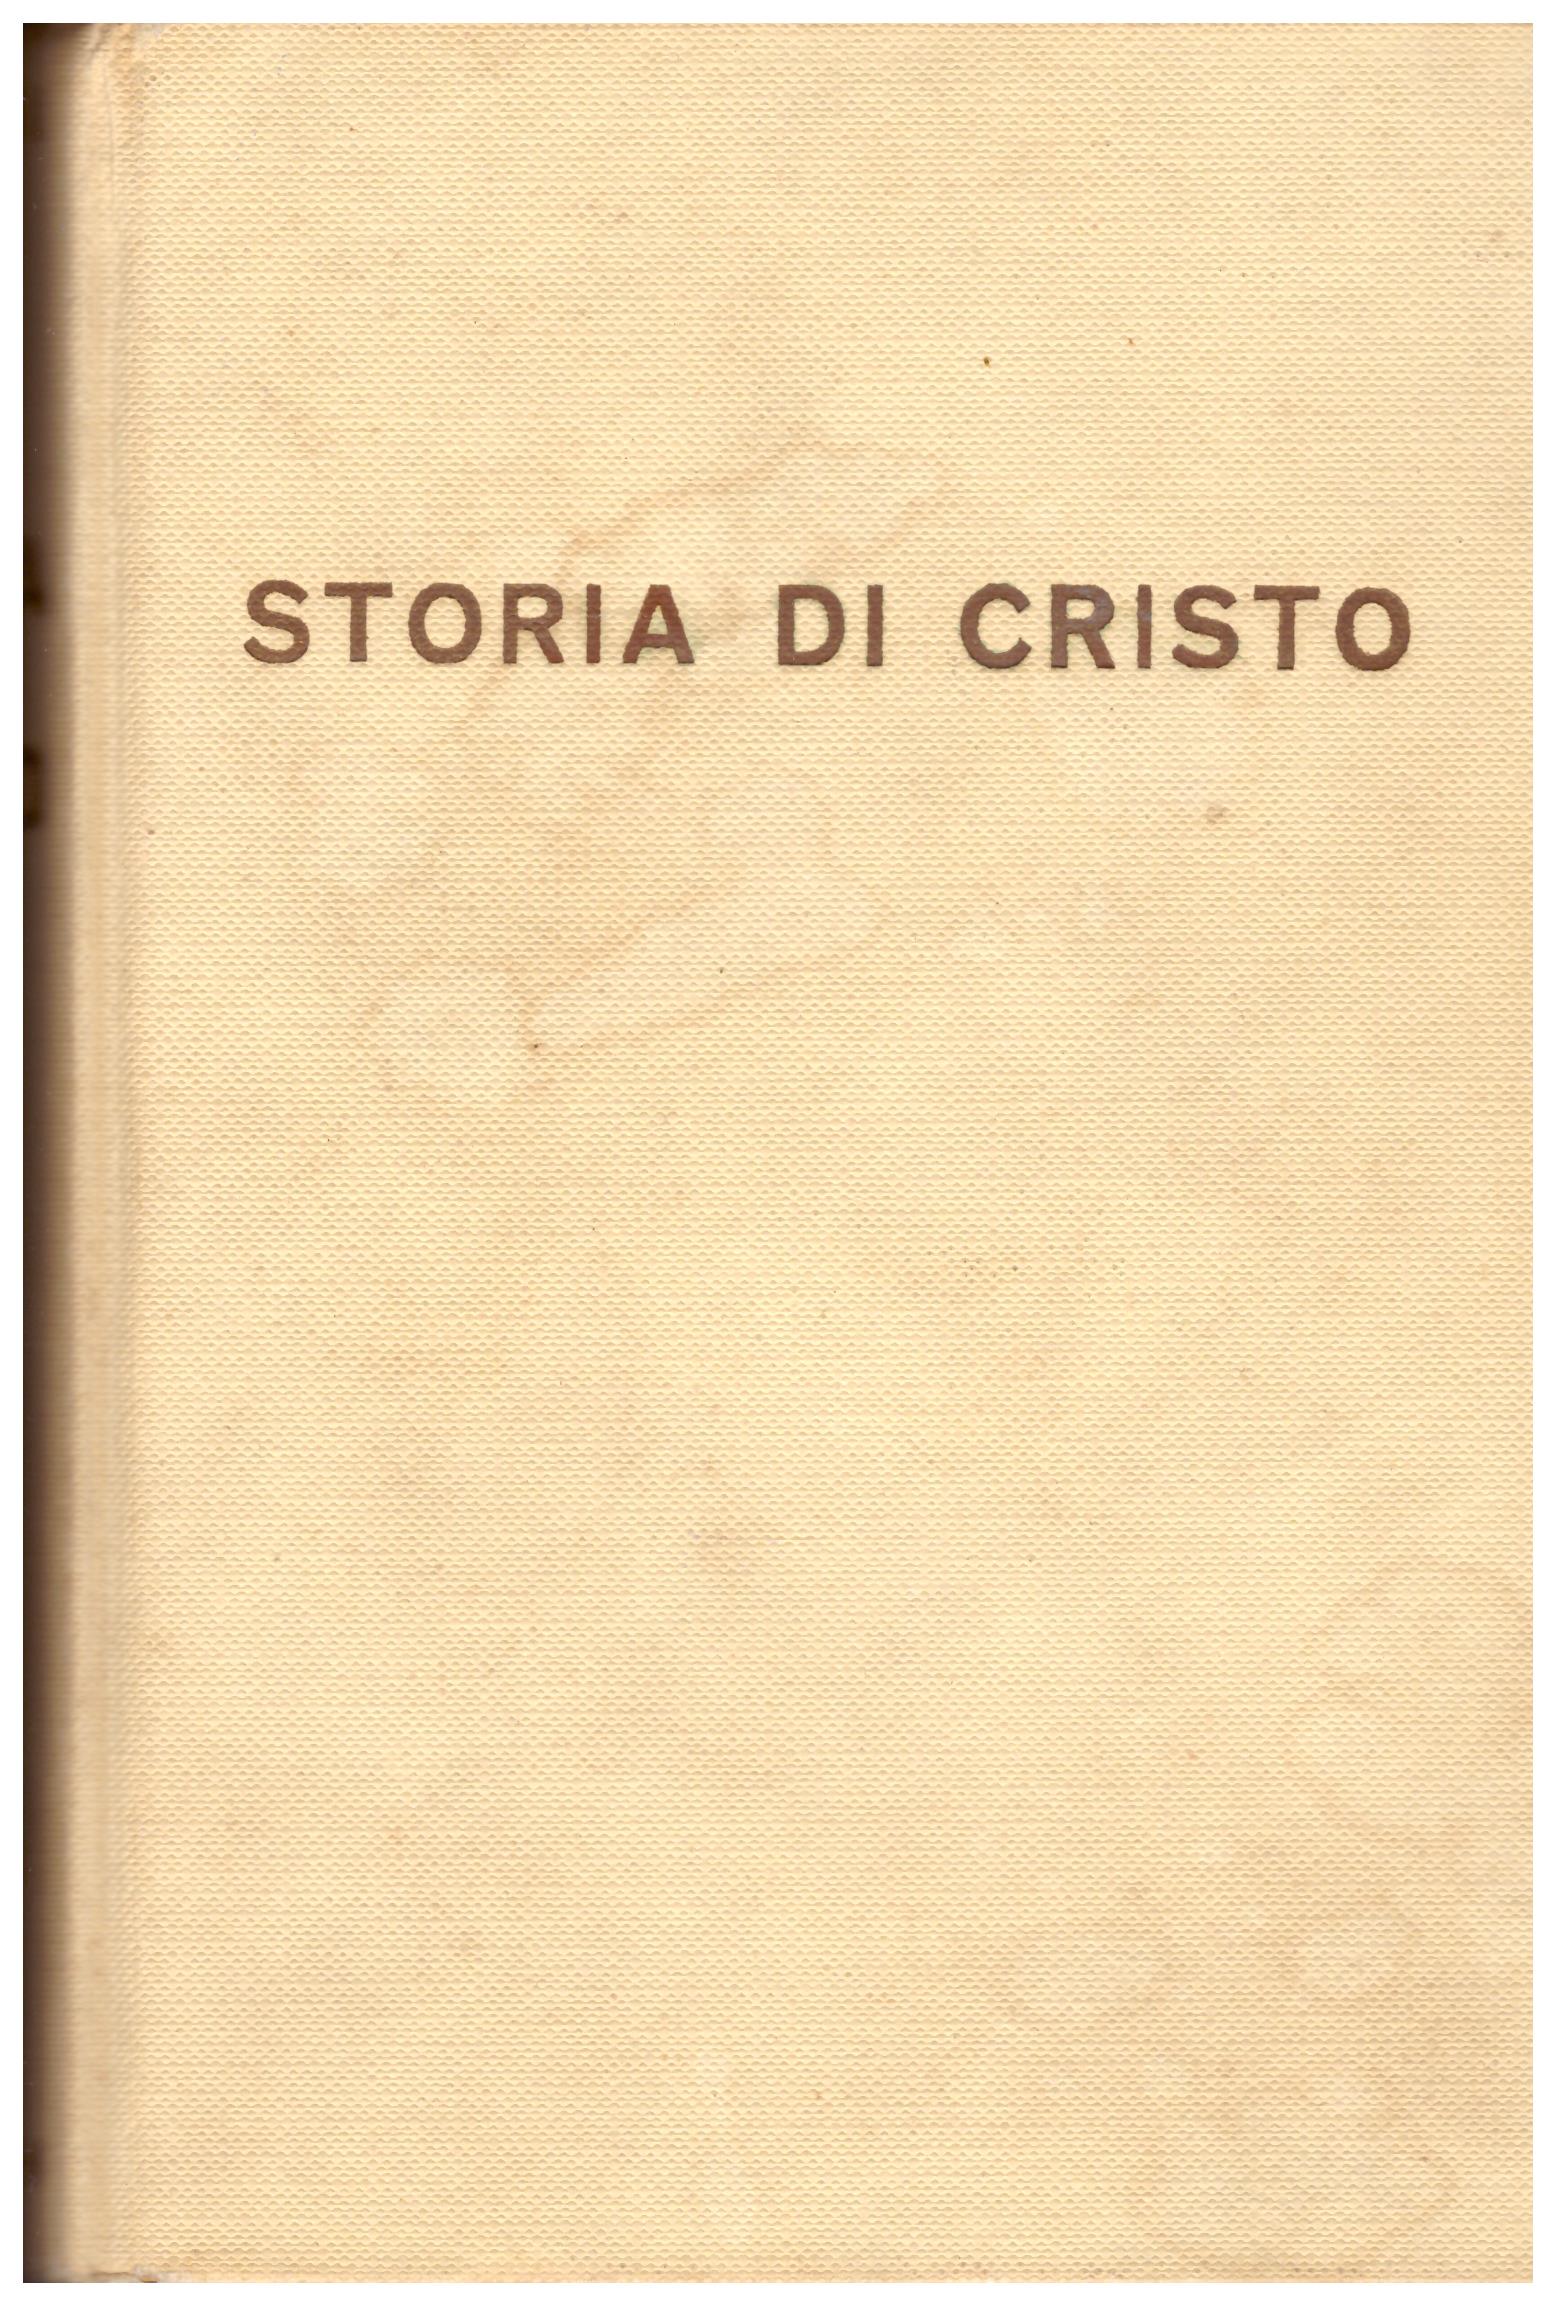 Titolo: Storia di Cristo Autore : Giovanni Papini  Editore: Vallecchi editore, 1961